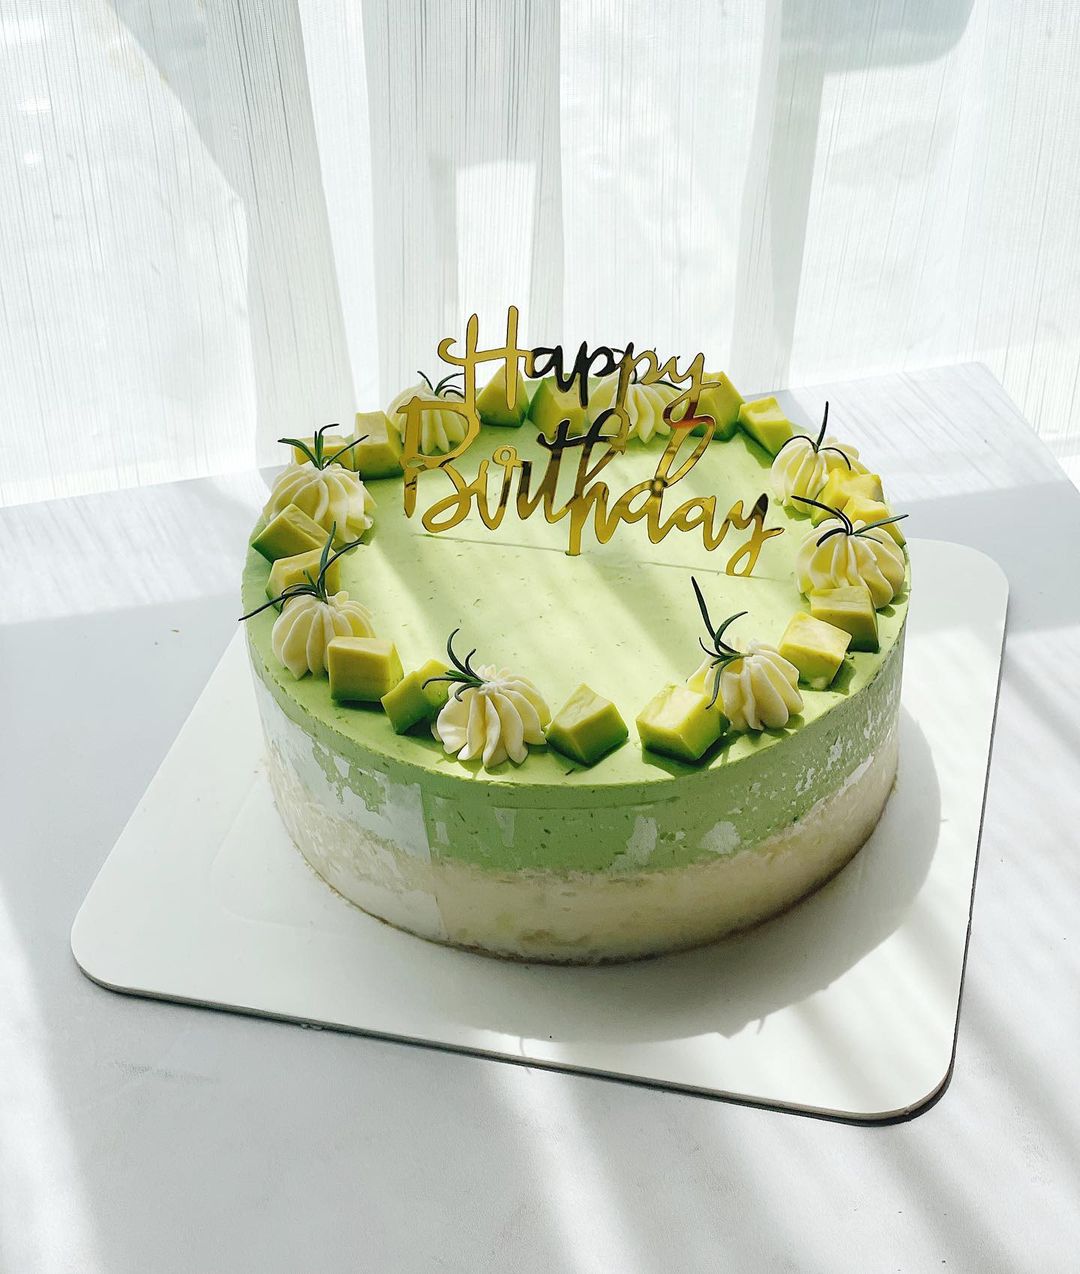 Đón sinh nhật bằng chiếc bánh sinh nhật matcha đẹp, giòn tan và hương vị thơm ngon là điều tuyệt vời. Hãy chiêm ngưỡng hình ảnh của chiếc bánh đẹp như trong cổ tích này để có ý tưởng cho một món quà sinh nhật hoàn hảo.